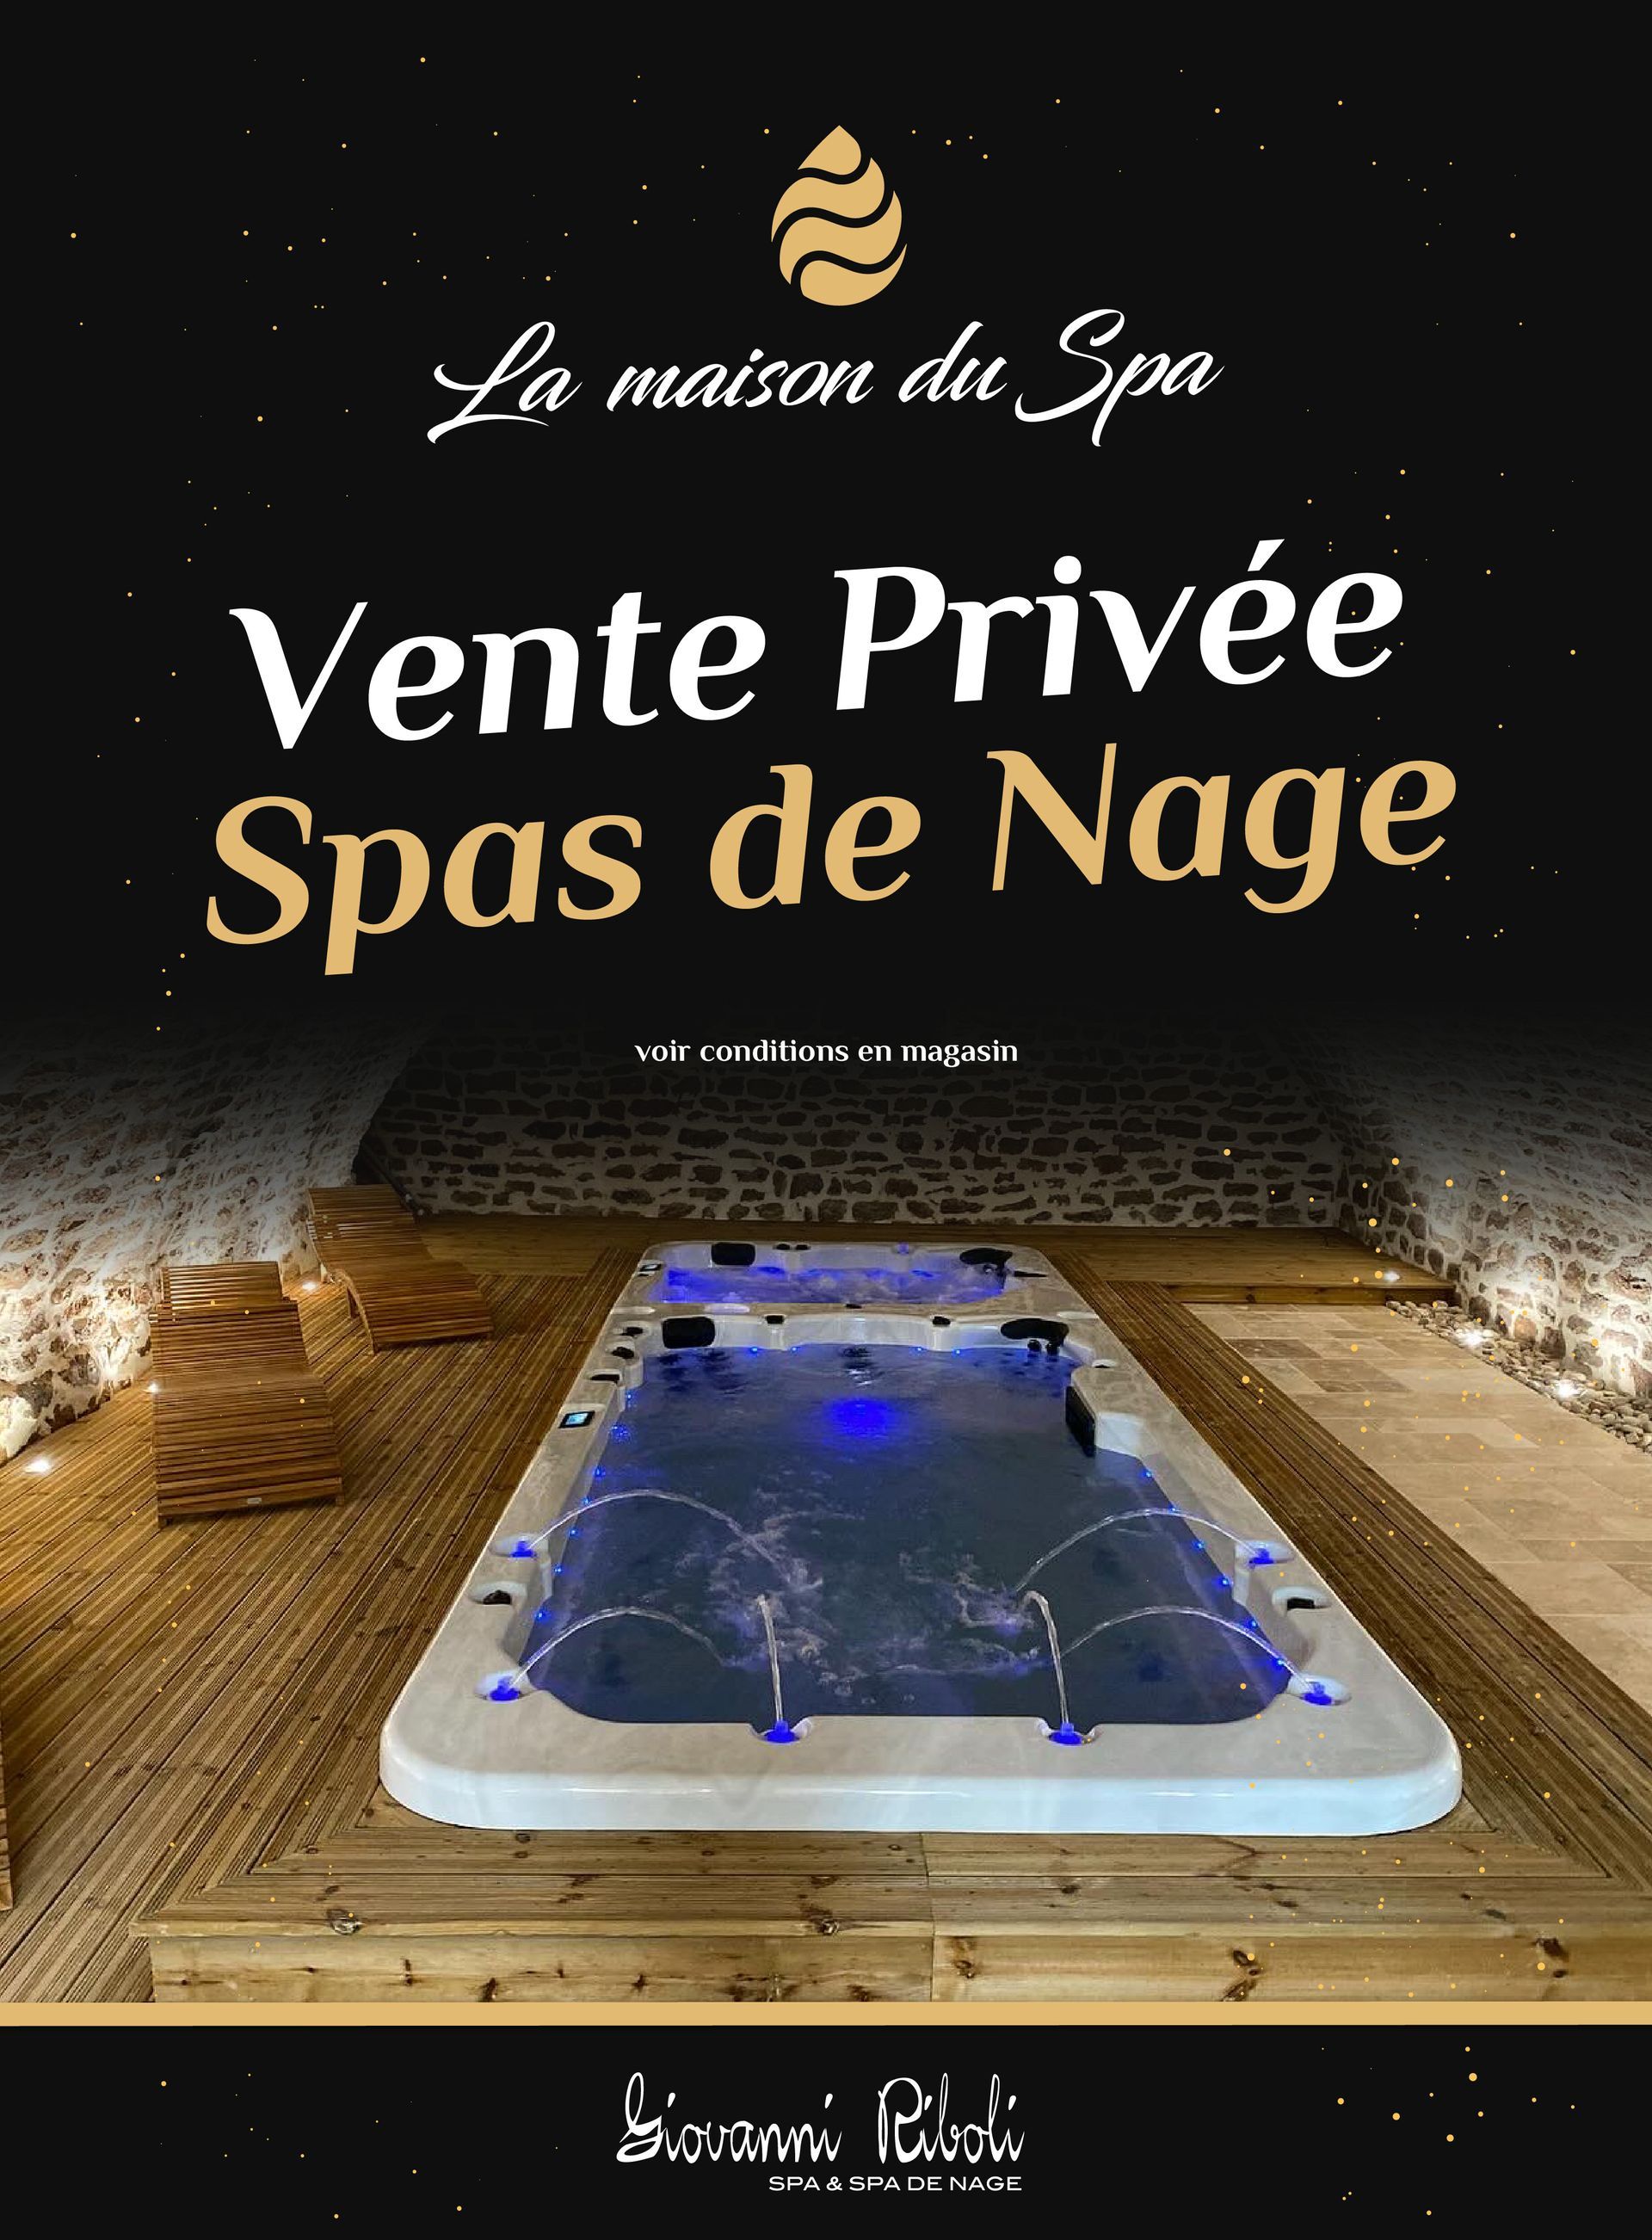 Visuel de la promotion vente privée spa de nage de La Maison Du Spa